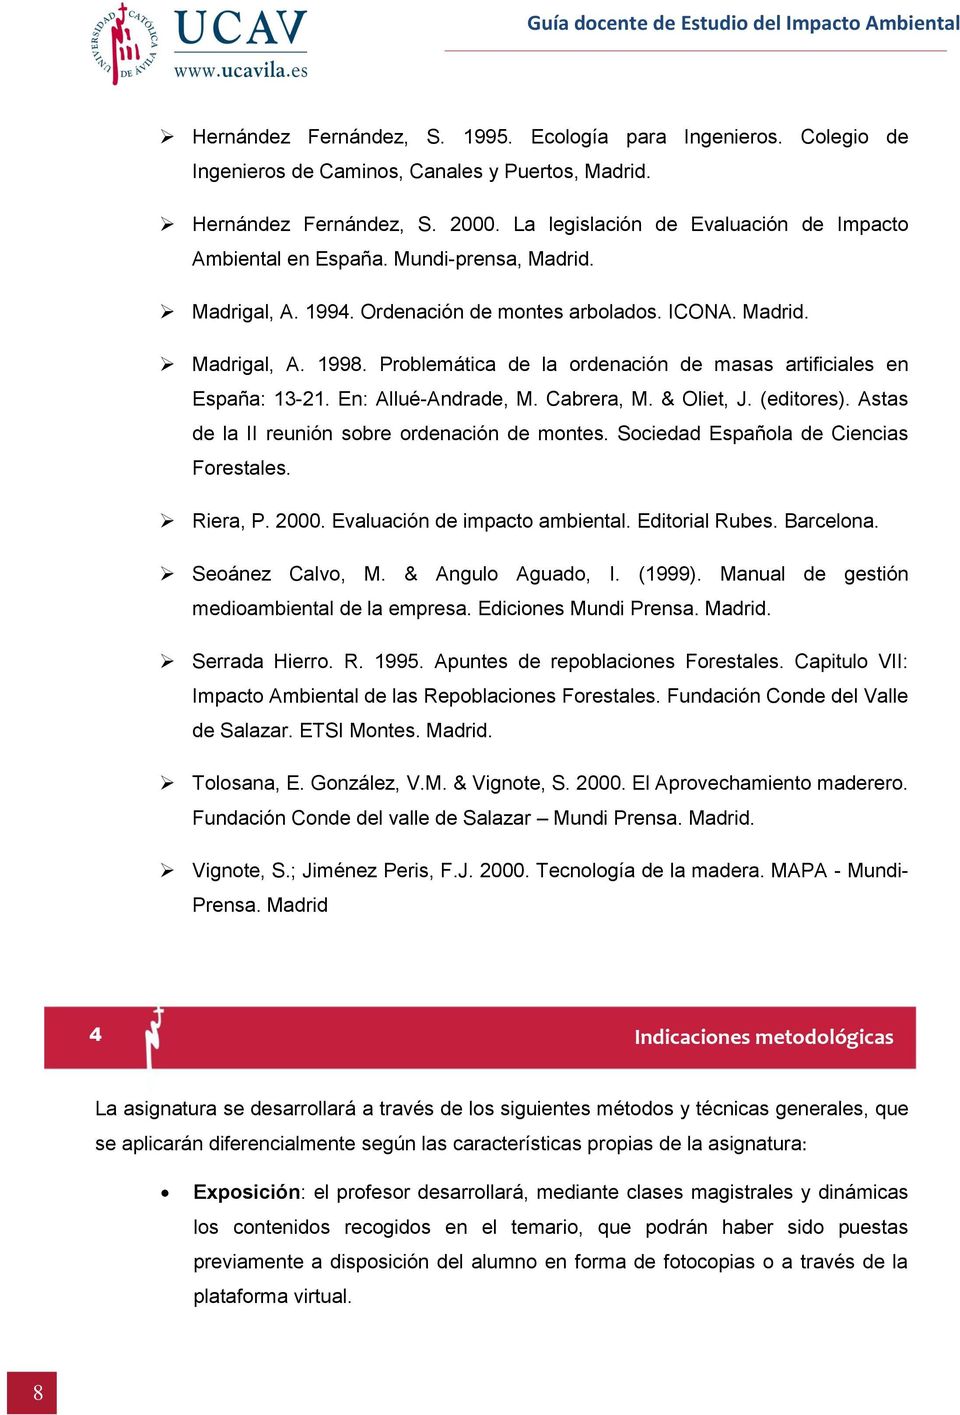 Problemática de la ordenación de masas artificiales en España: 13-21. En: Allué-Andrade, M. Cabrera, M. & Oliet, J. (editores). Astas de la II reunión sobre ordenación de montes.